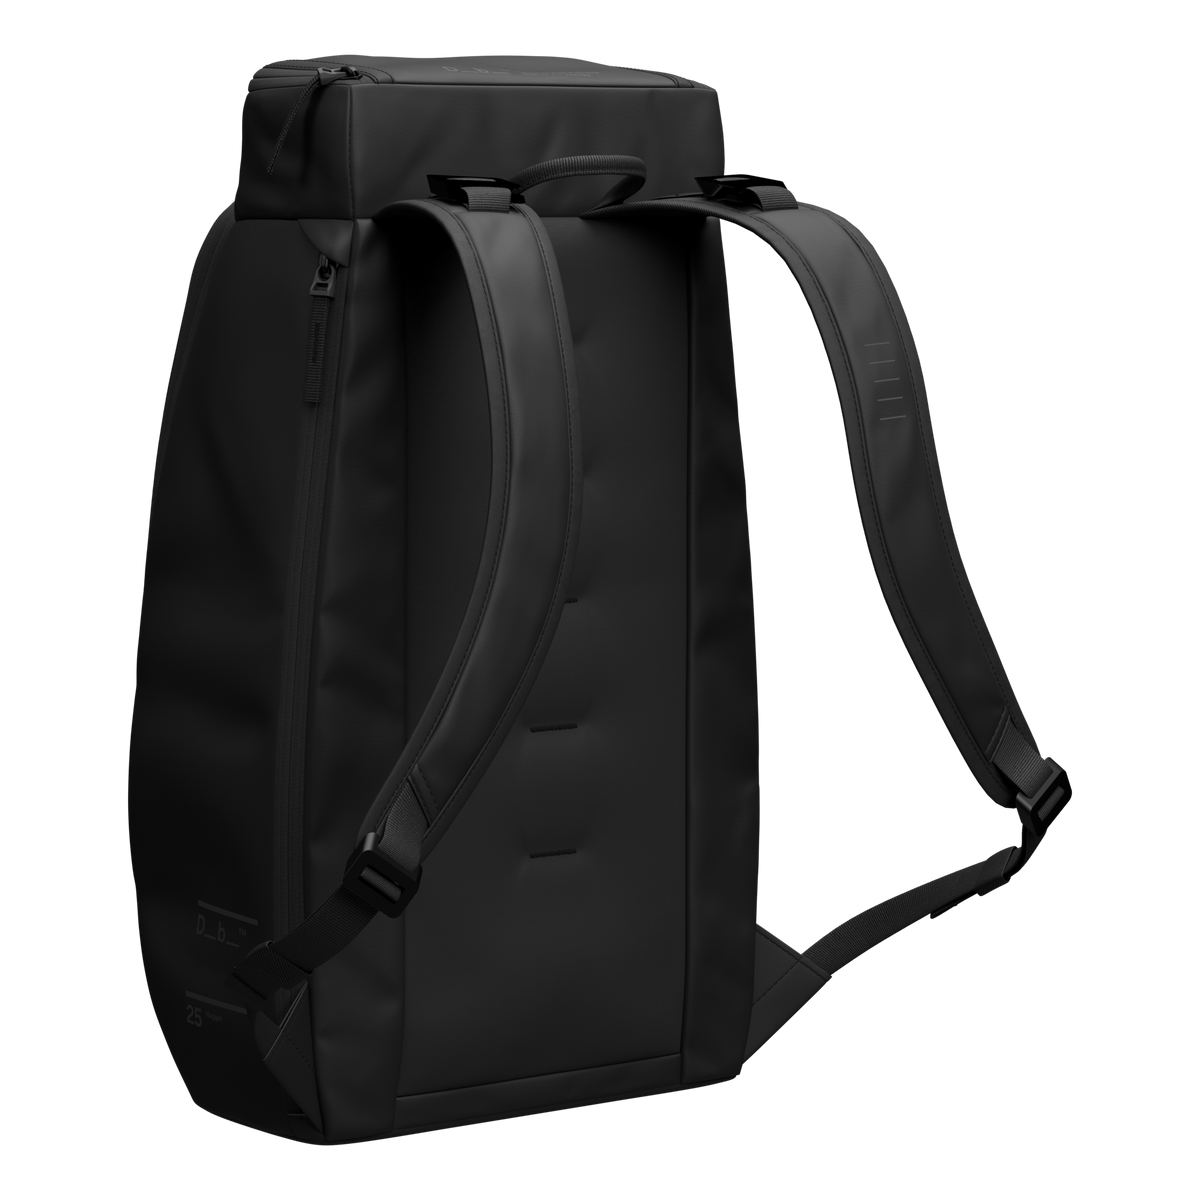 Hugger Backpack 25l Black Out